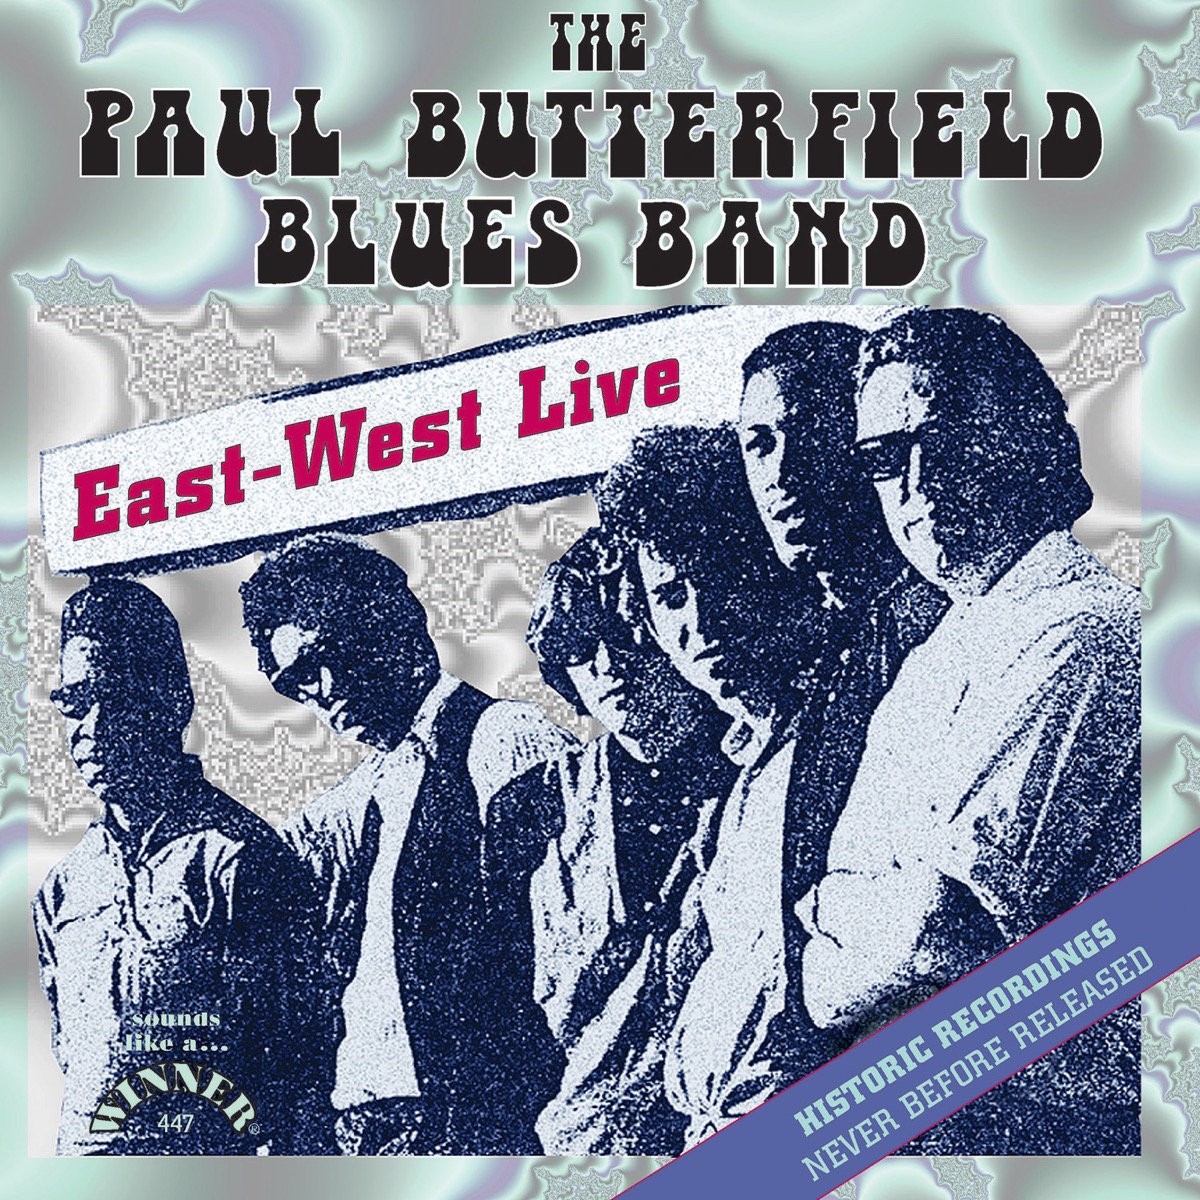 Paul Butterfield Blues Band(ポール・バターフィールド・ブルース・バンド)の情報まとめ | OKMusic -  全ての音楽情報がここに